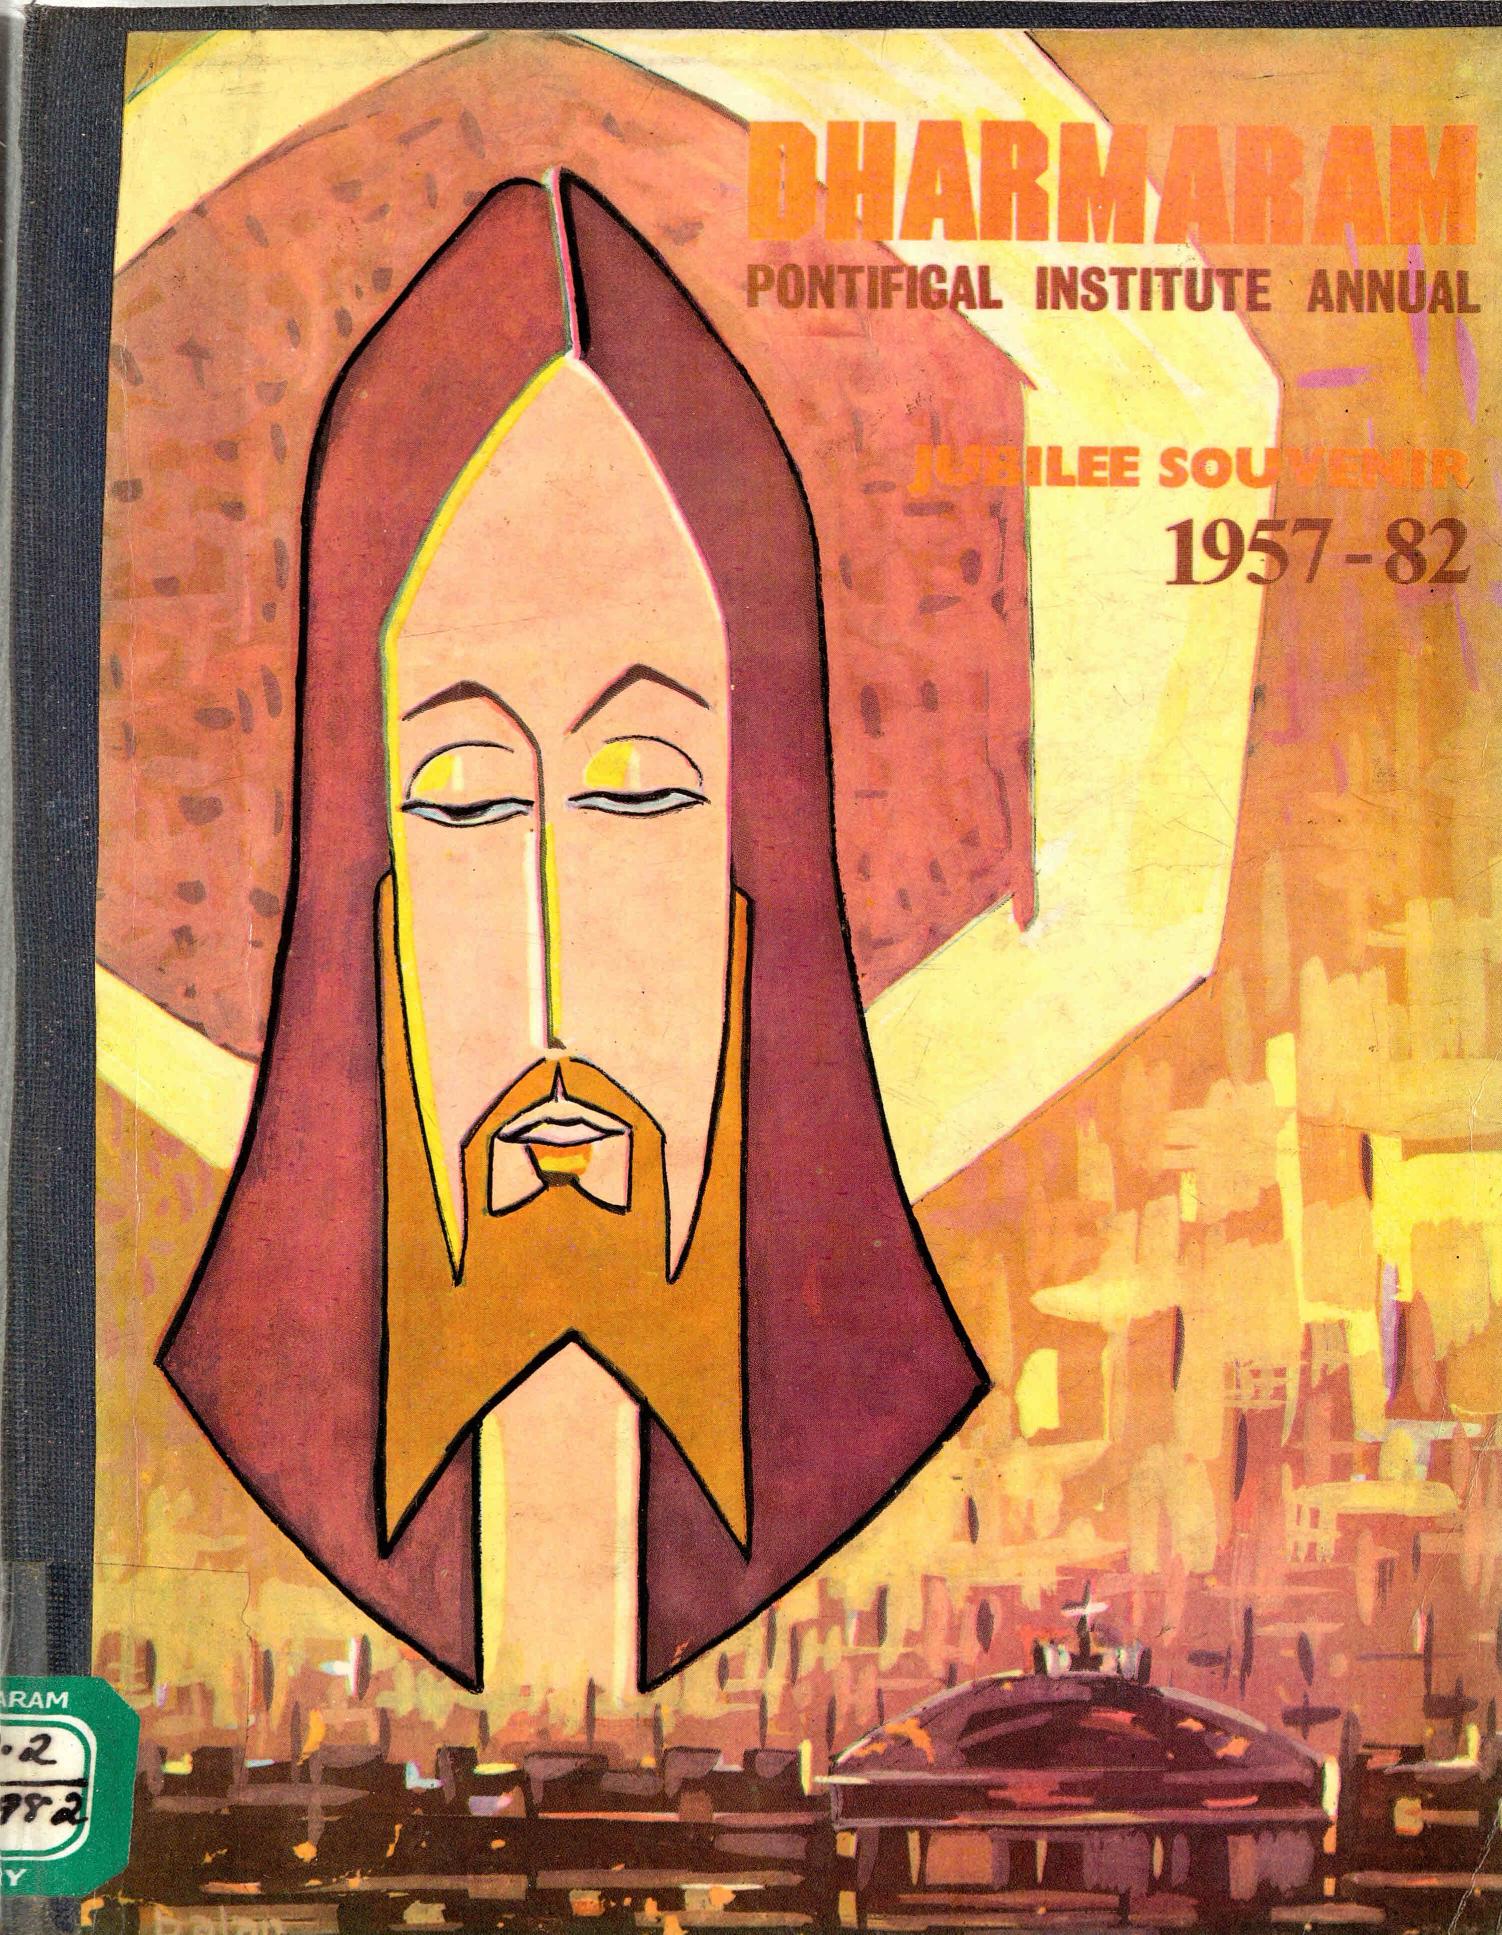  1982 - Dharmaram - Pontifical Institute - Annual